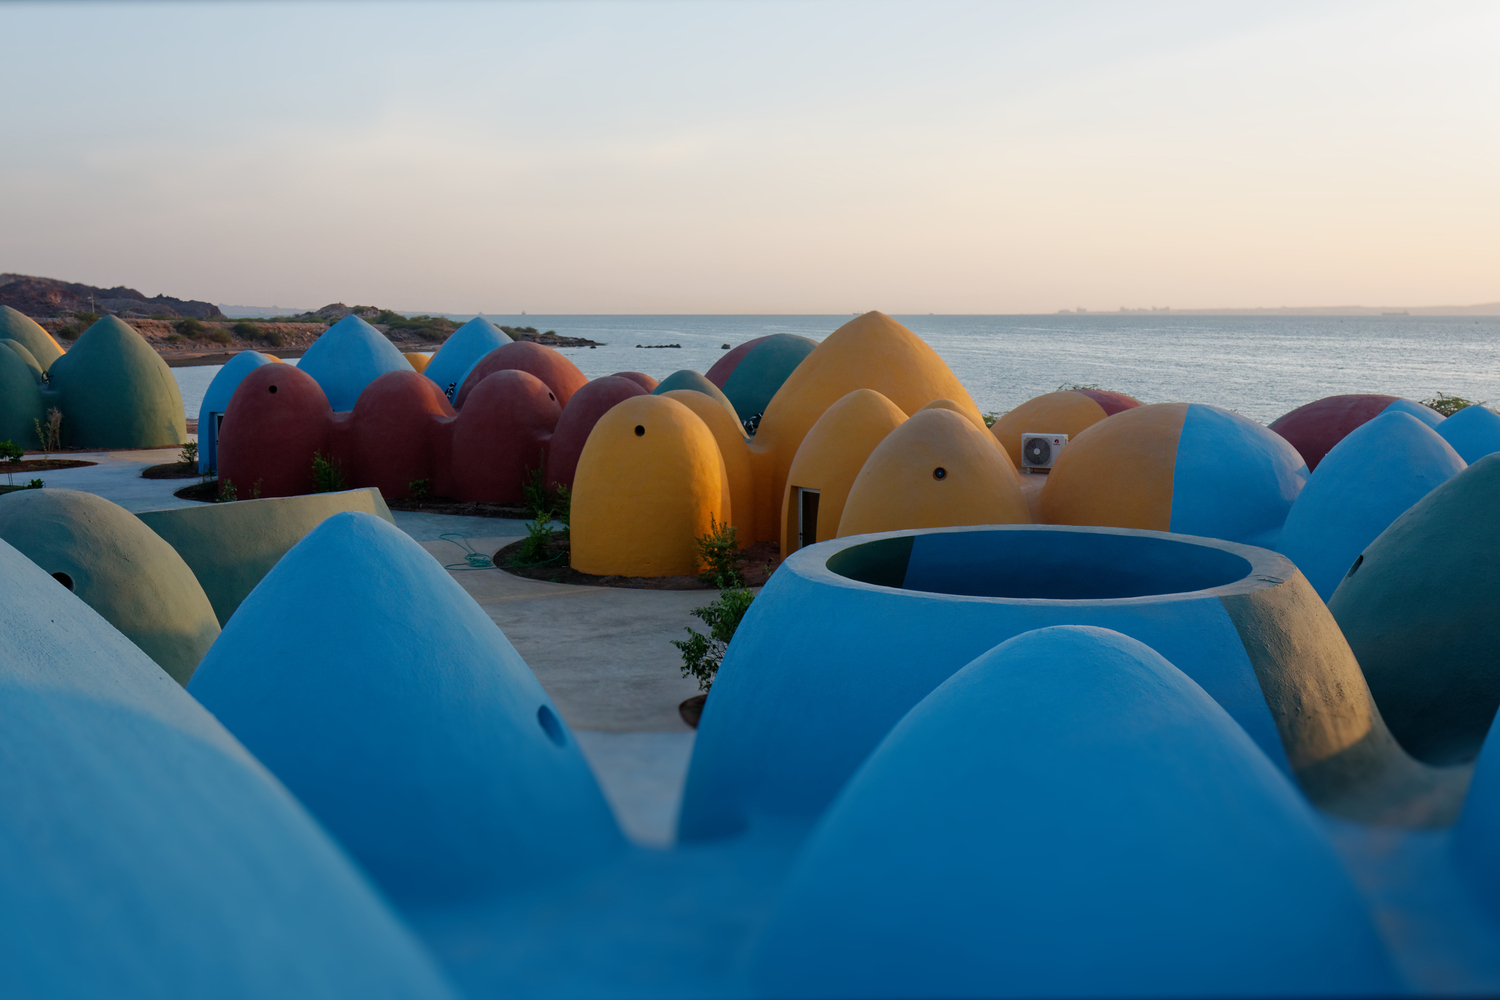 Chiêm ngưỡng ngôi làng với những mái vòm đầy màu sắc trên đảo Hormuz, Iran - Ảnh 6